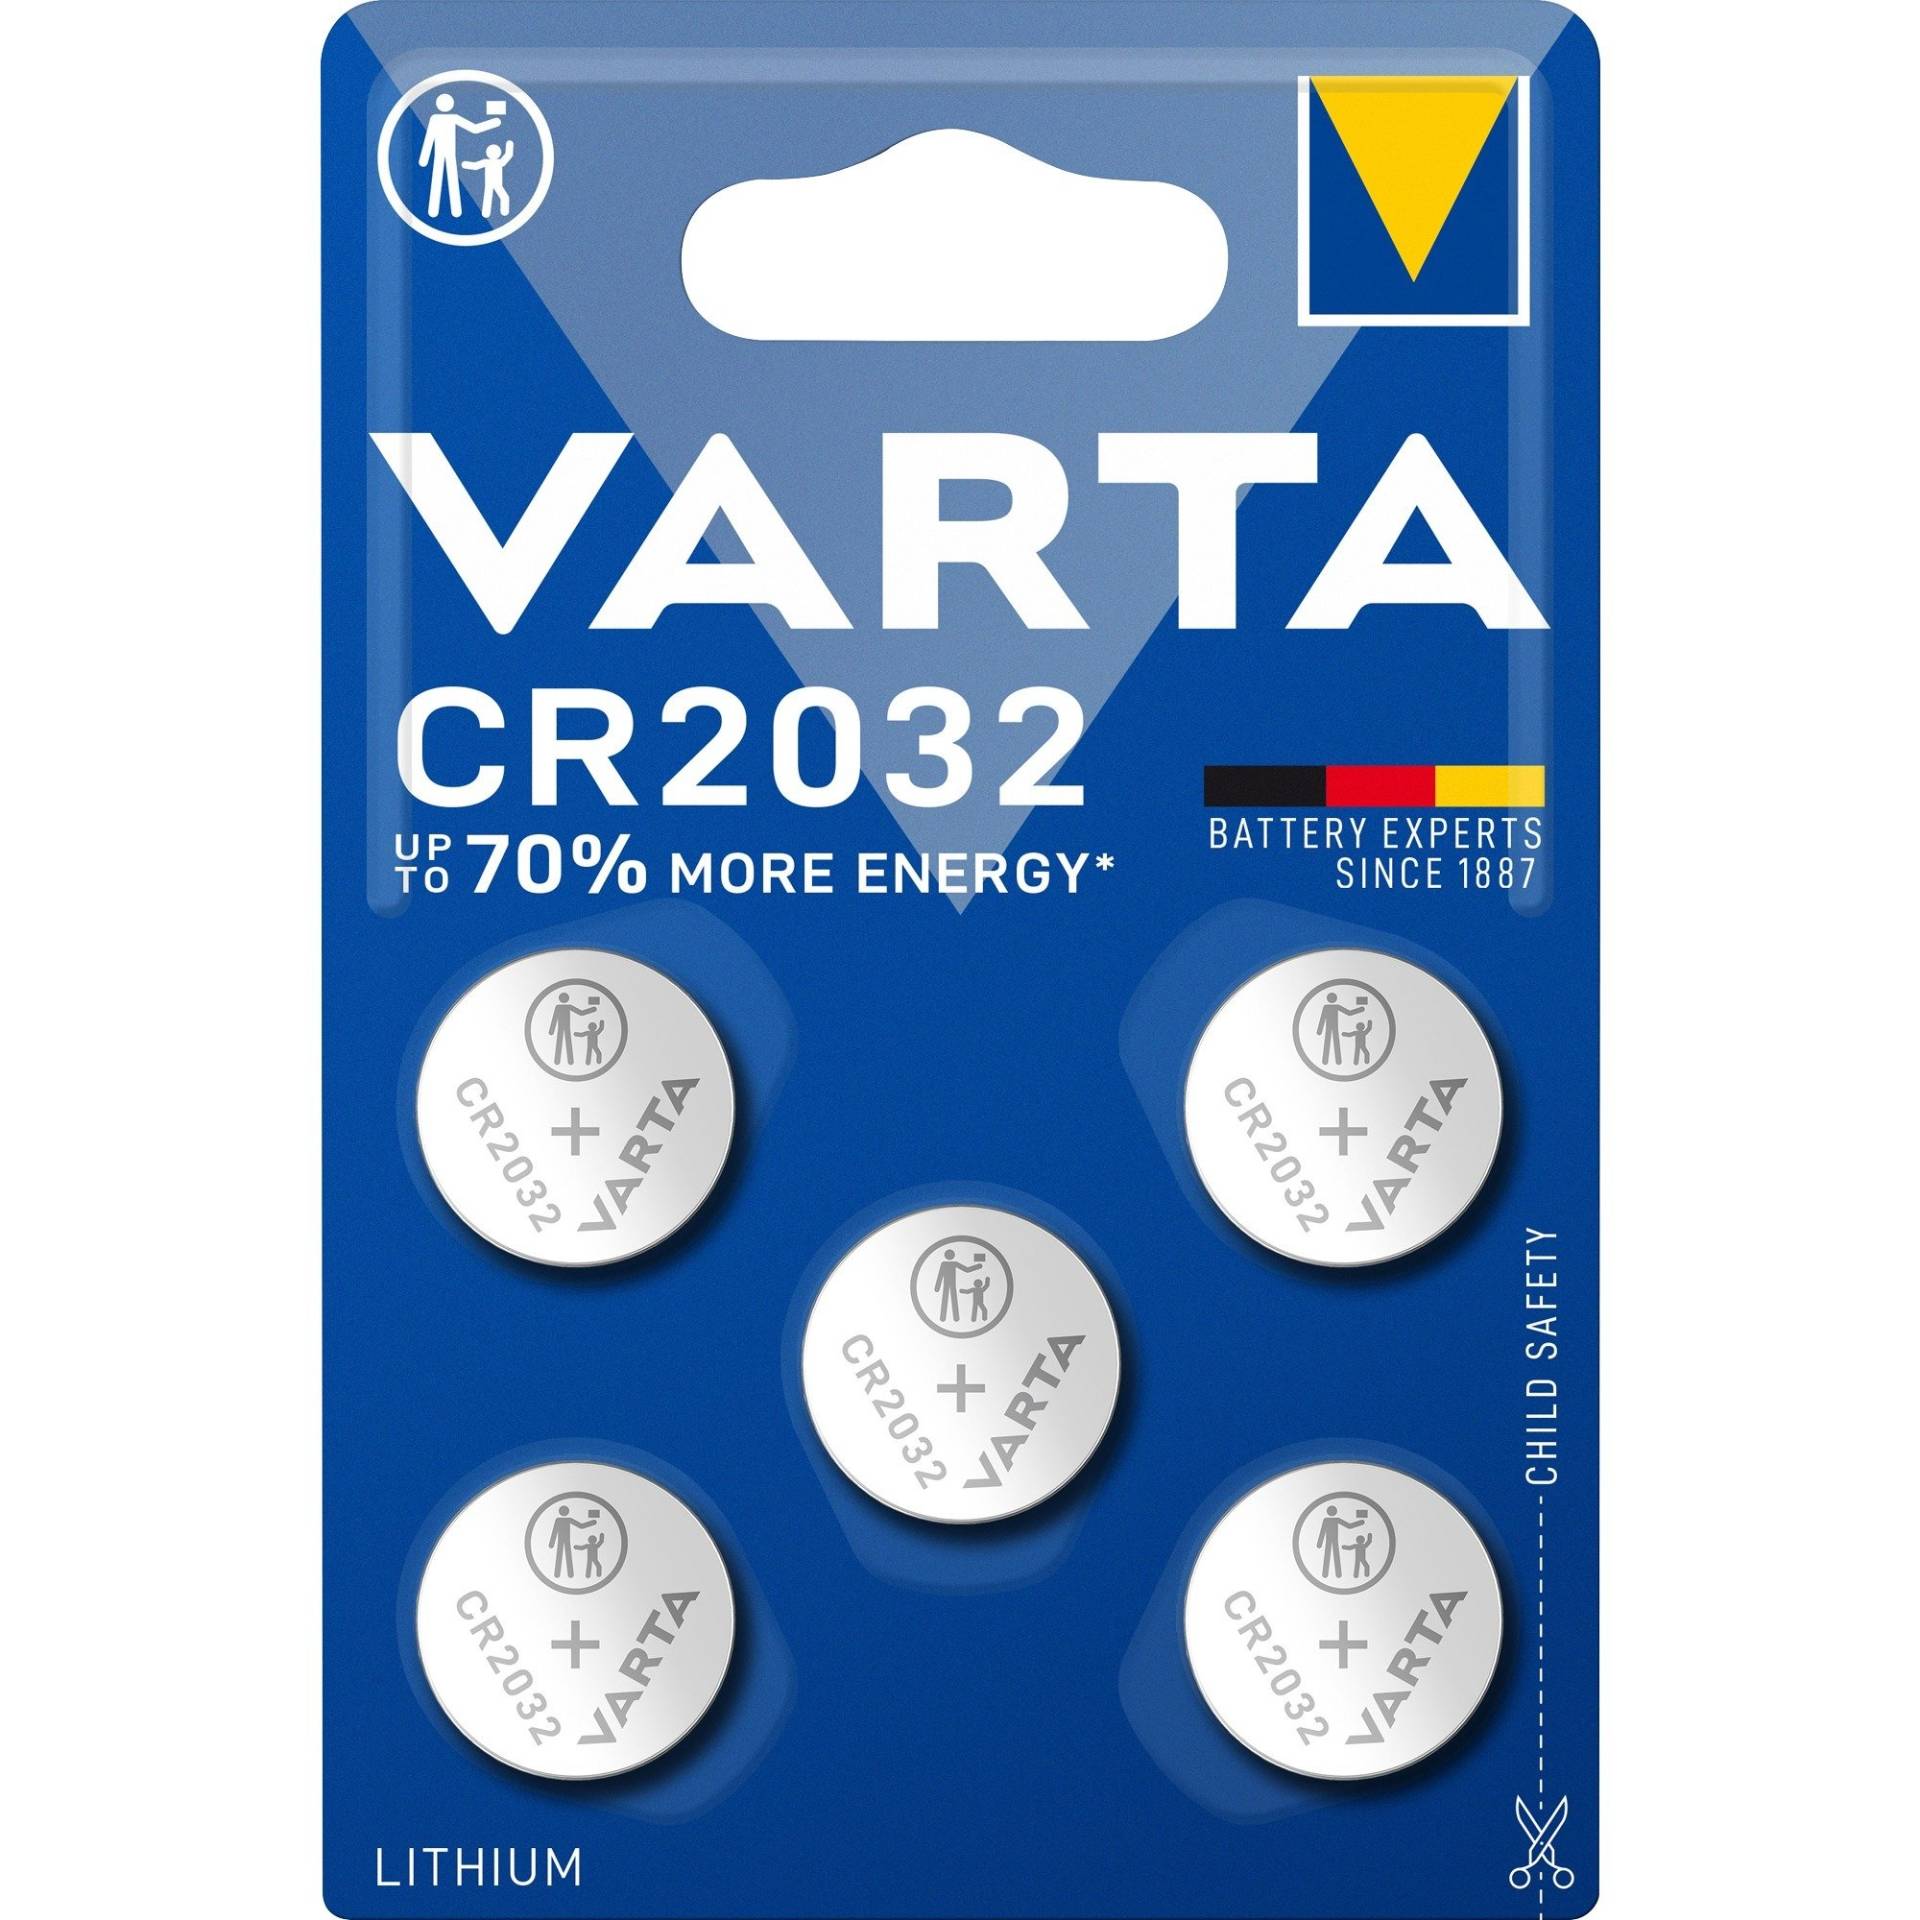 LITHIUM Coin CR2032, Batterie von Varta